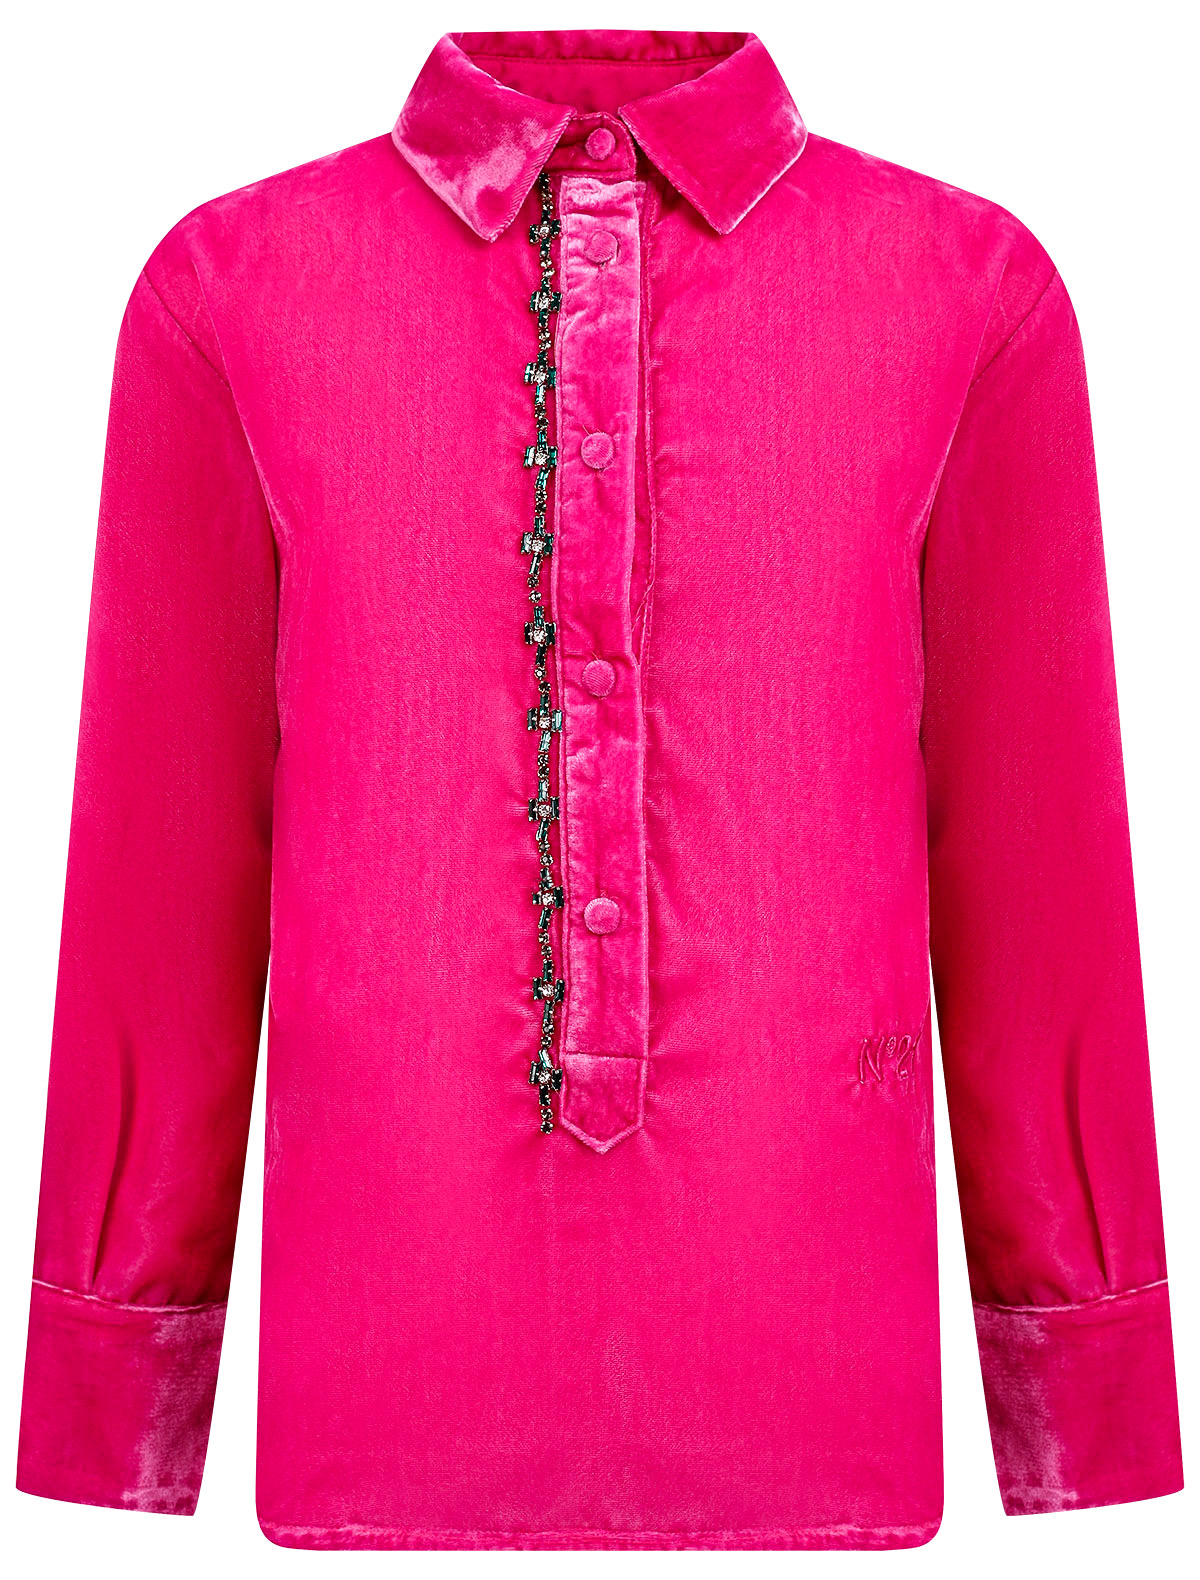 Блуза №21 kids №21 kids розового цвета